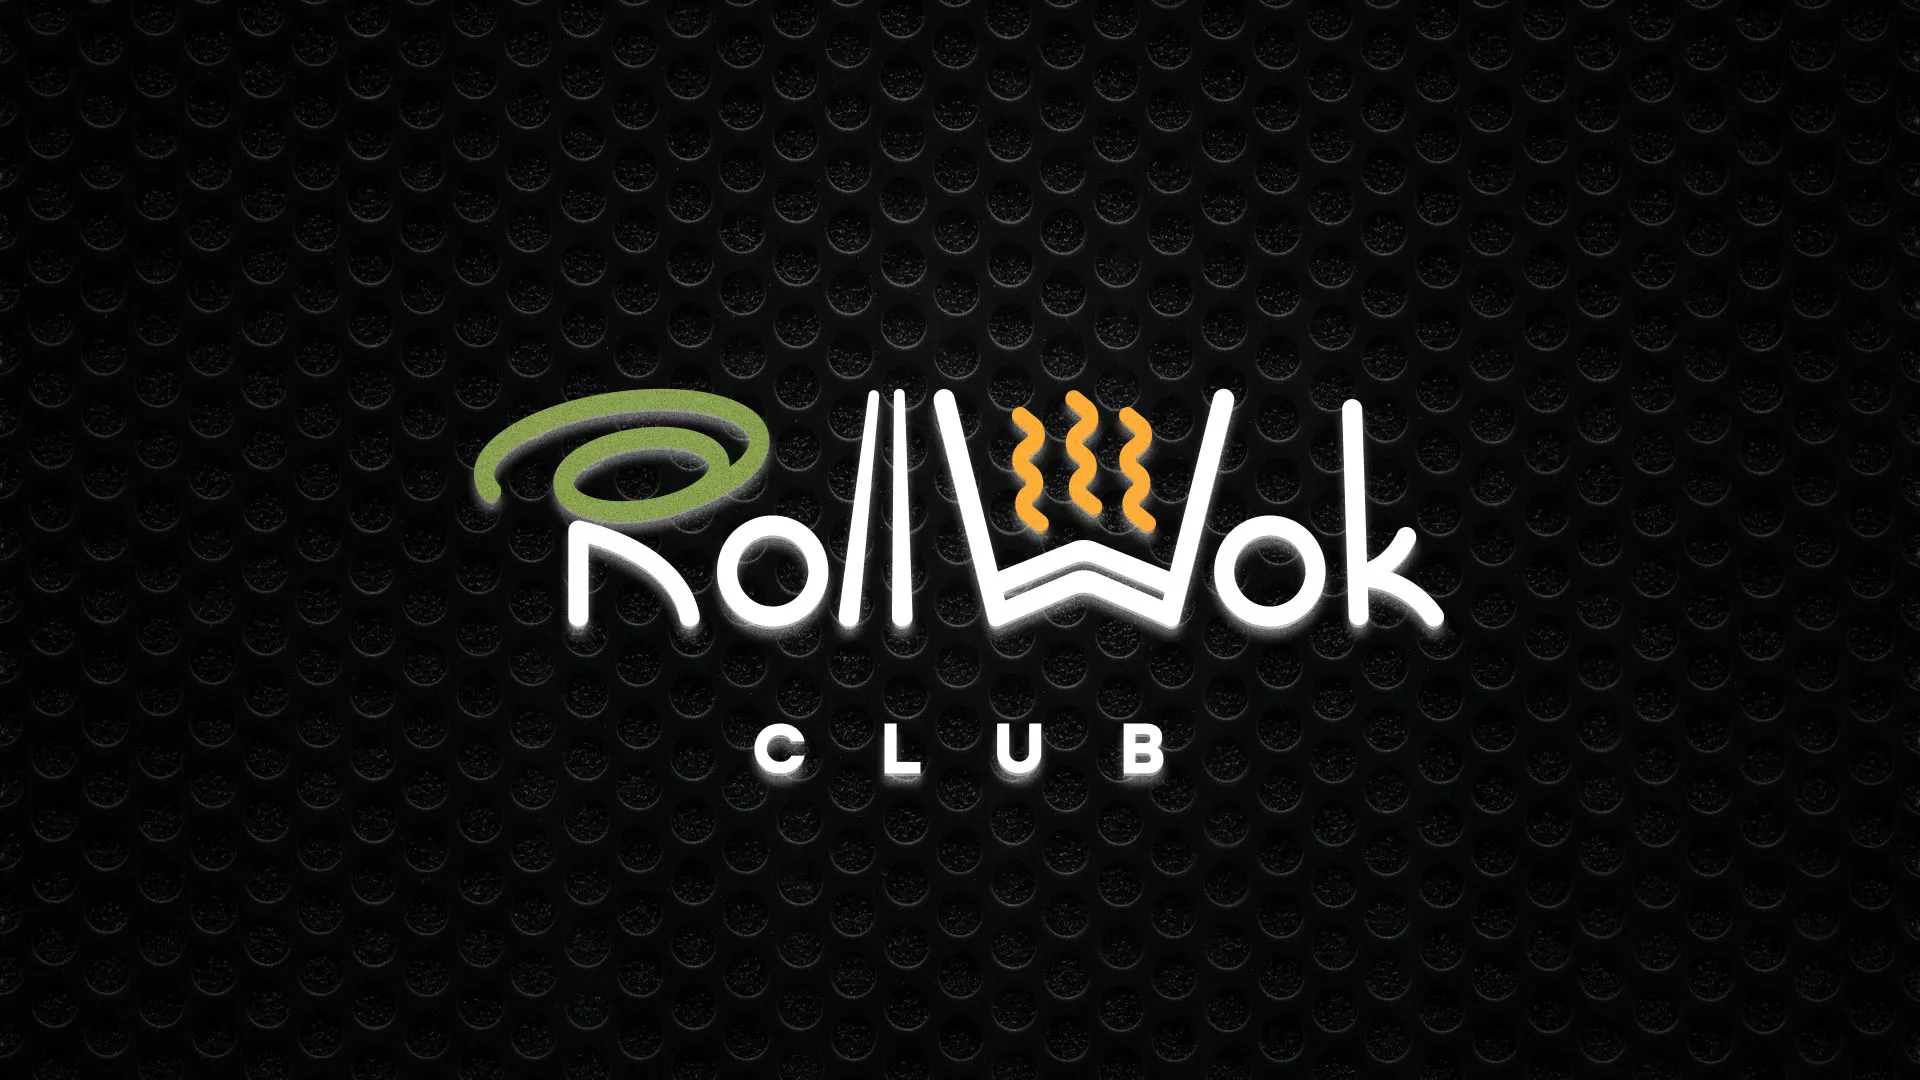 Брендирование торговых точек суши-бара «Roll Wok Club» в Обнинске